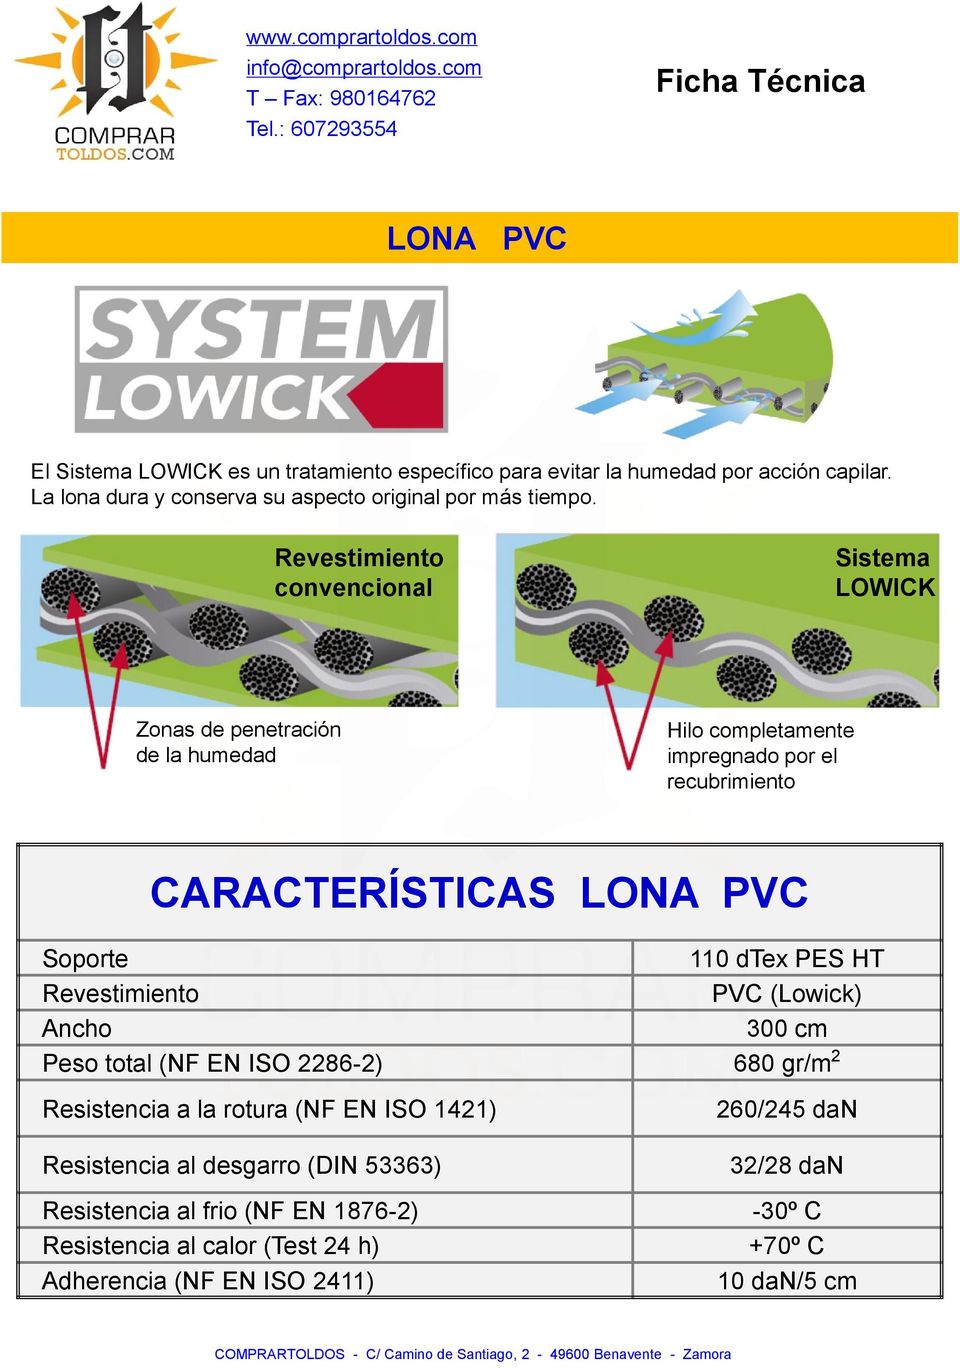 Soporte 110 dtex PES HT Revestimiento PVC (Lowick) Ancho 300 cm Peso total (NF EN ISO 2286-2) 680 gr/m 2 Resistencia a la rotura (NF EN ISO 1421) 260/245 dan